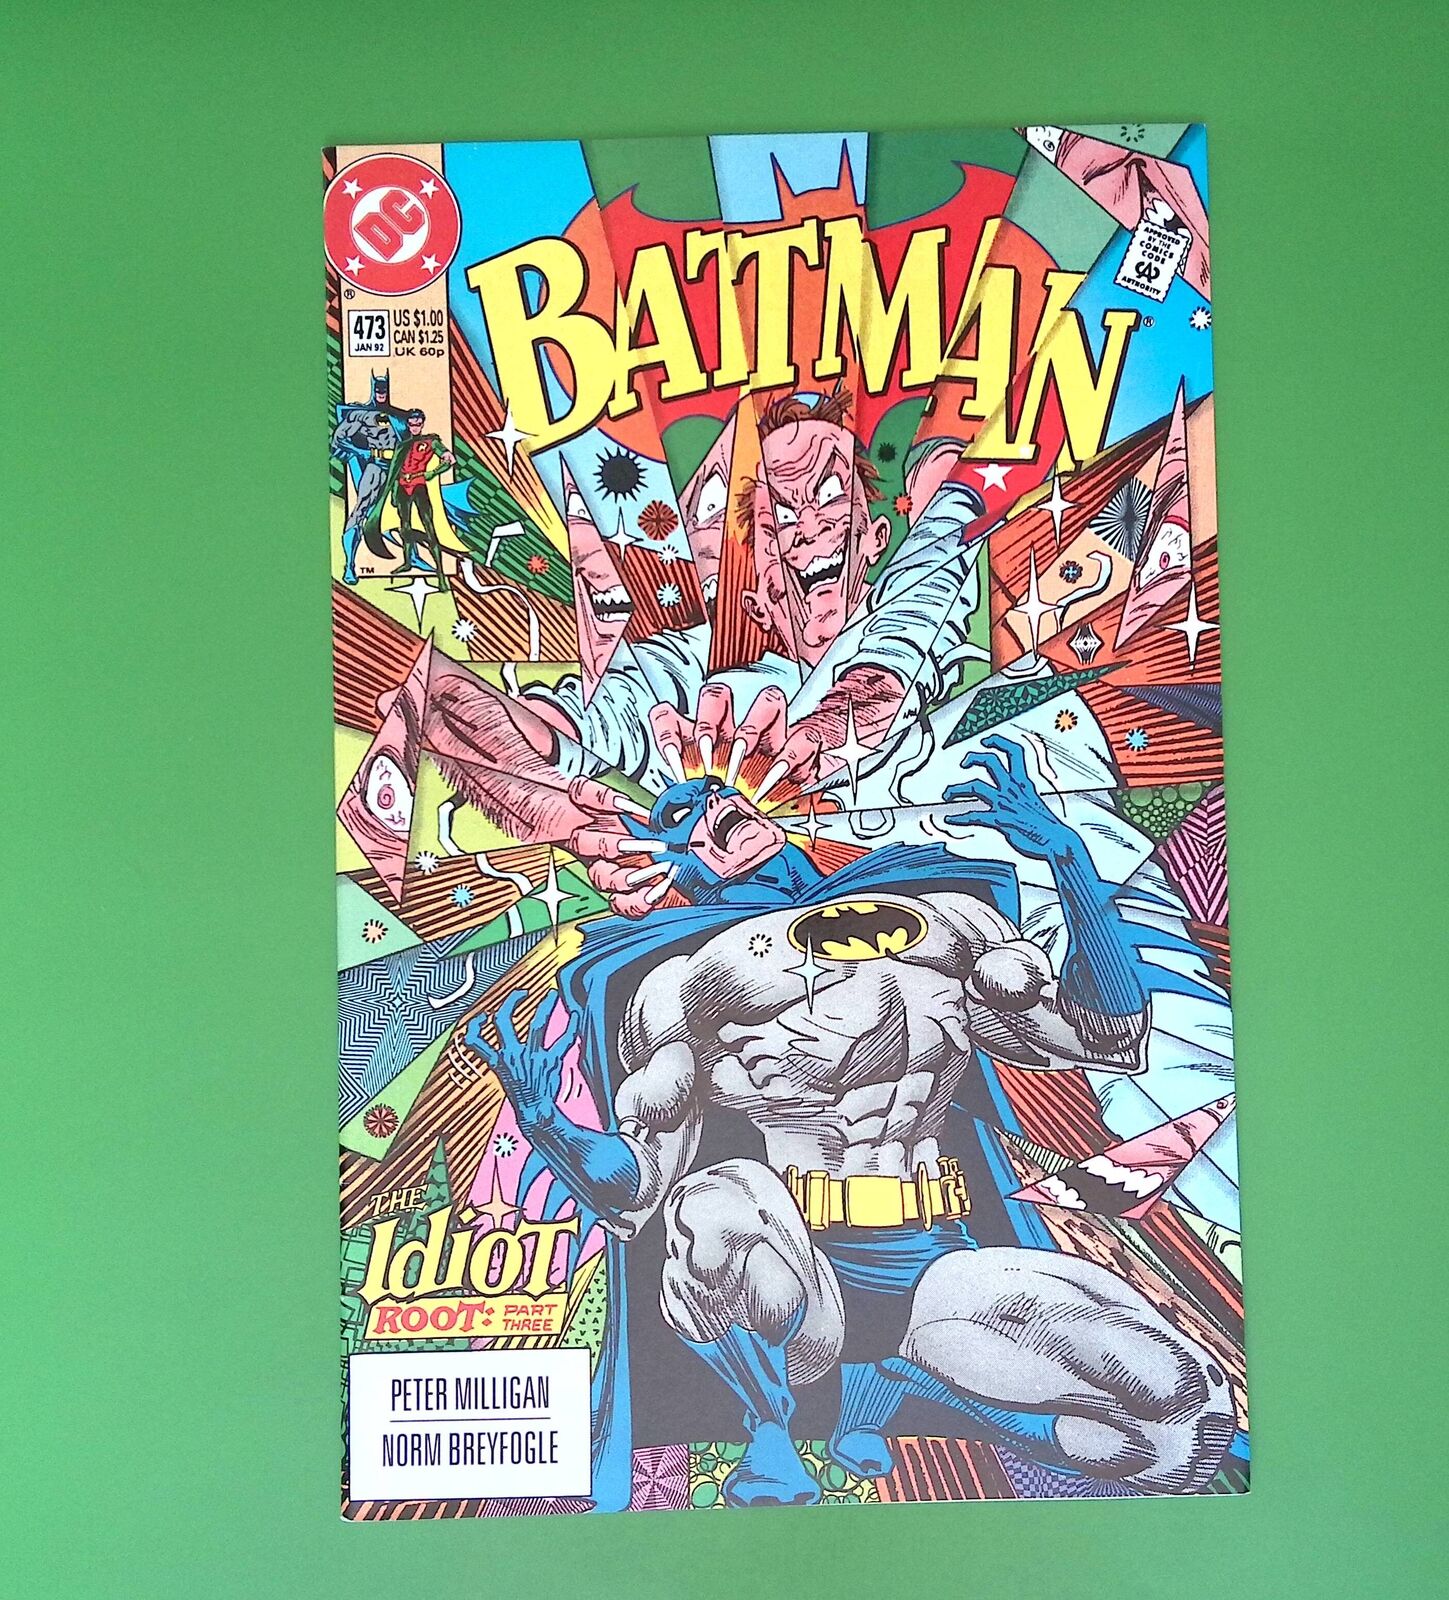 BATMAN #473 VOL. 1 HIGH GRADE DC COMIC BOOK TS33-164